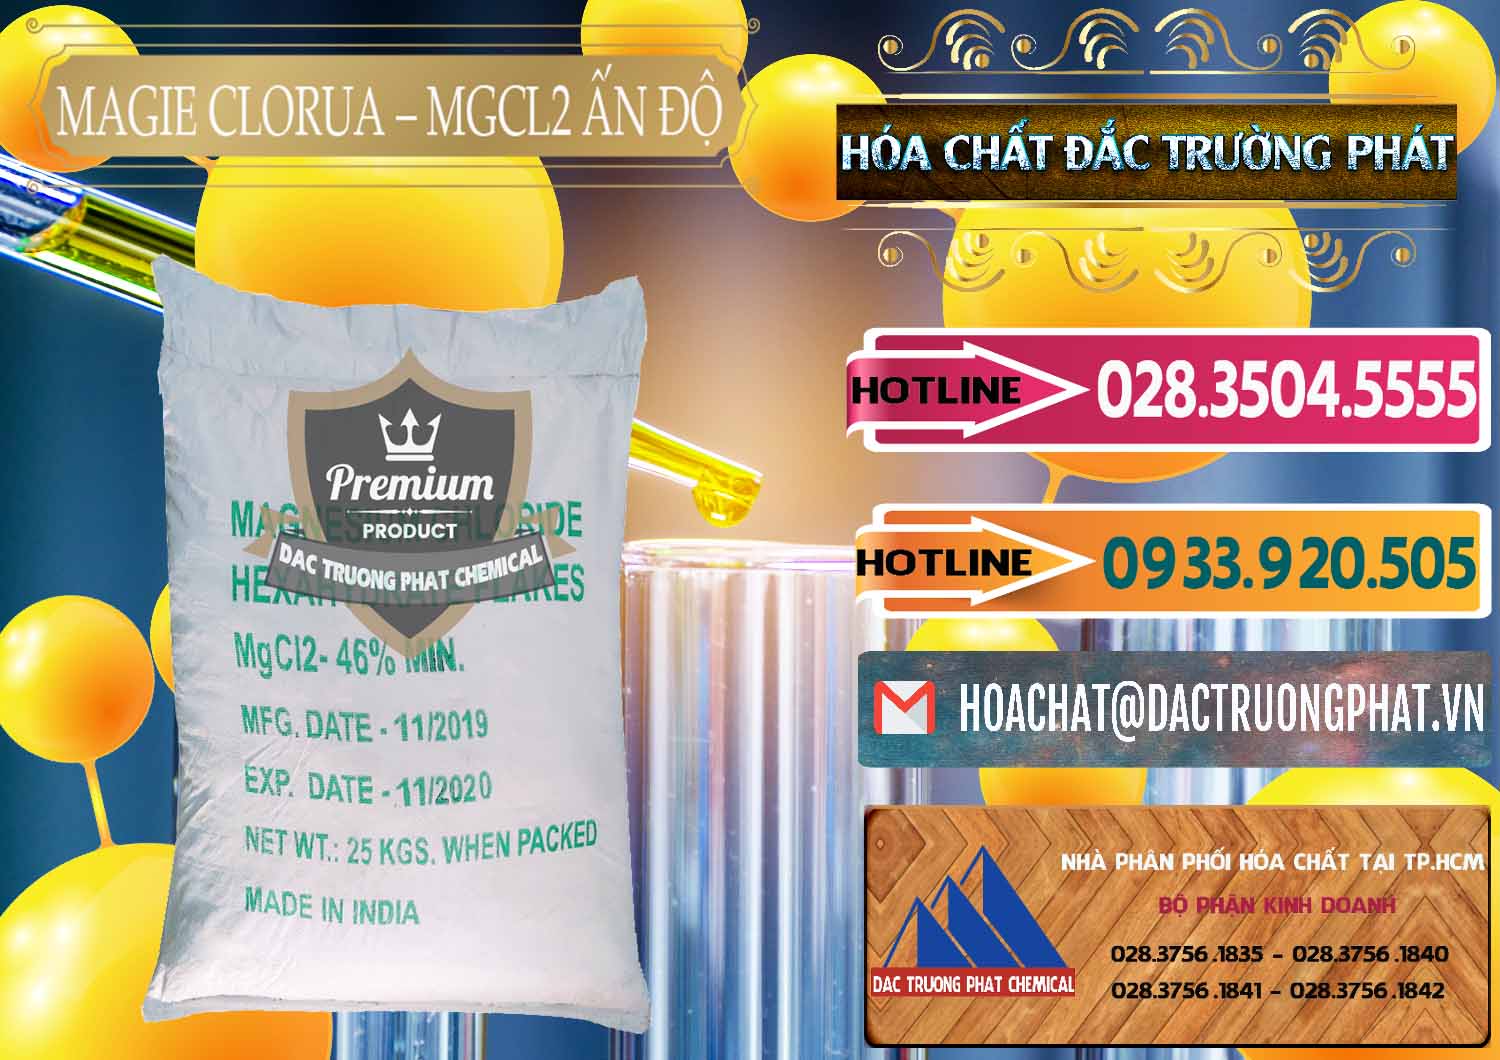 Nơi chuyên phân phối & bán Magie Clorua – MGCL2 46% Dạng Vảy Ấn Độ India - 0092 - Công ty phân phối - cung cấp hóa chất tại TP.HCM - dactruongphat.vn